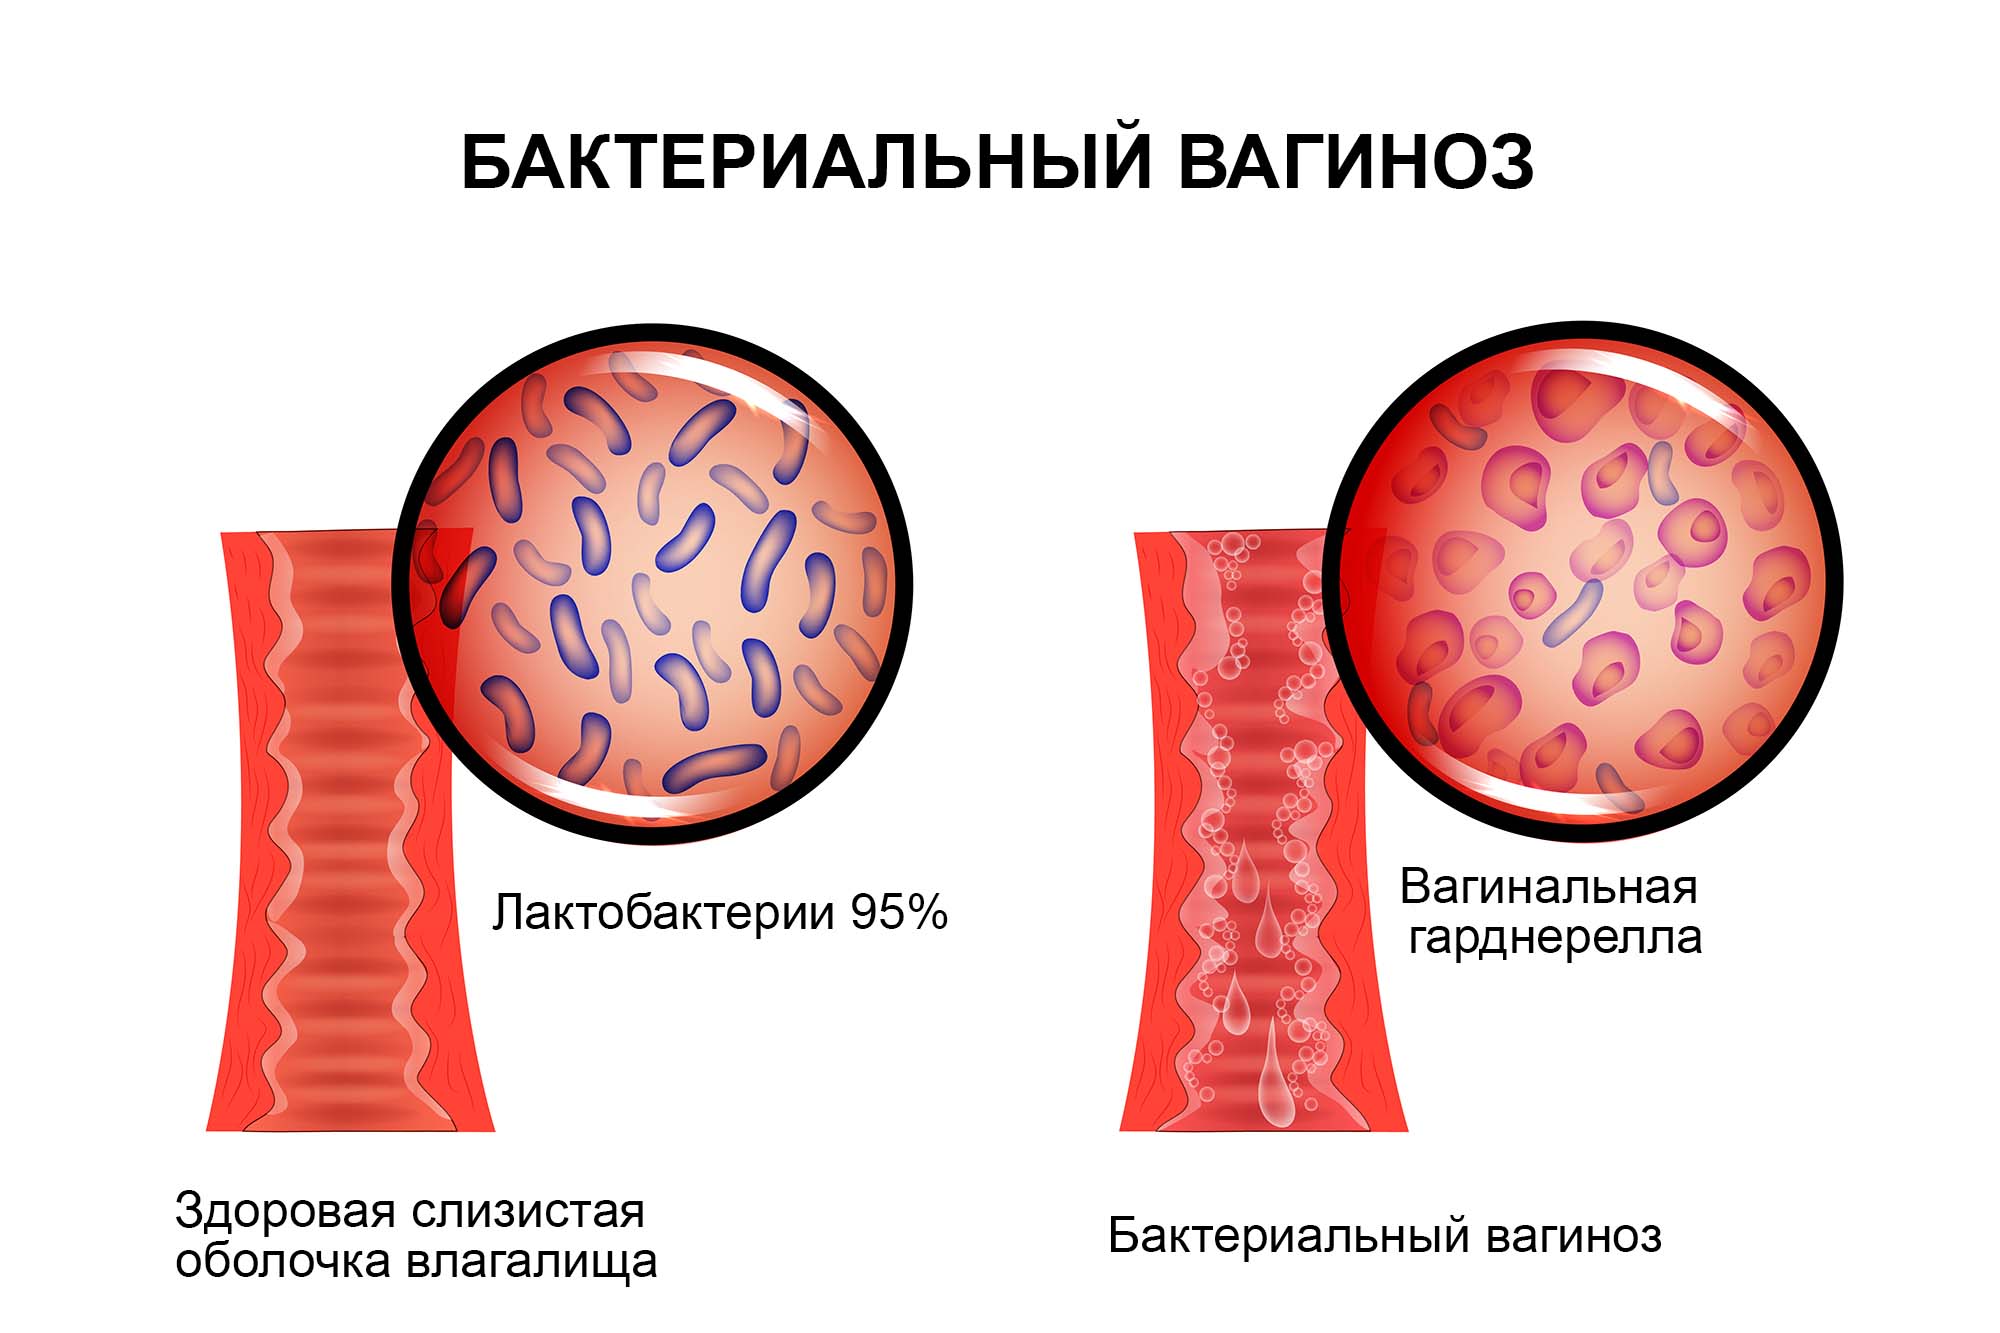 Бактериальный вагиноз возбудитель